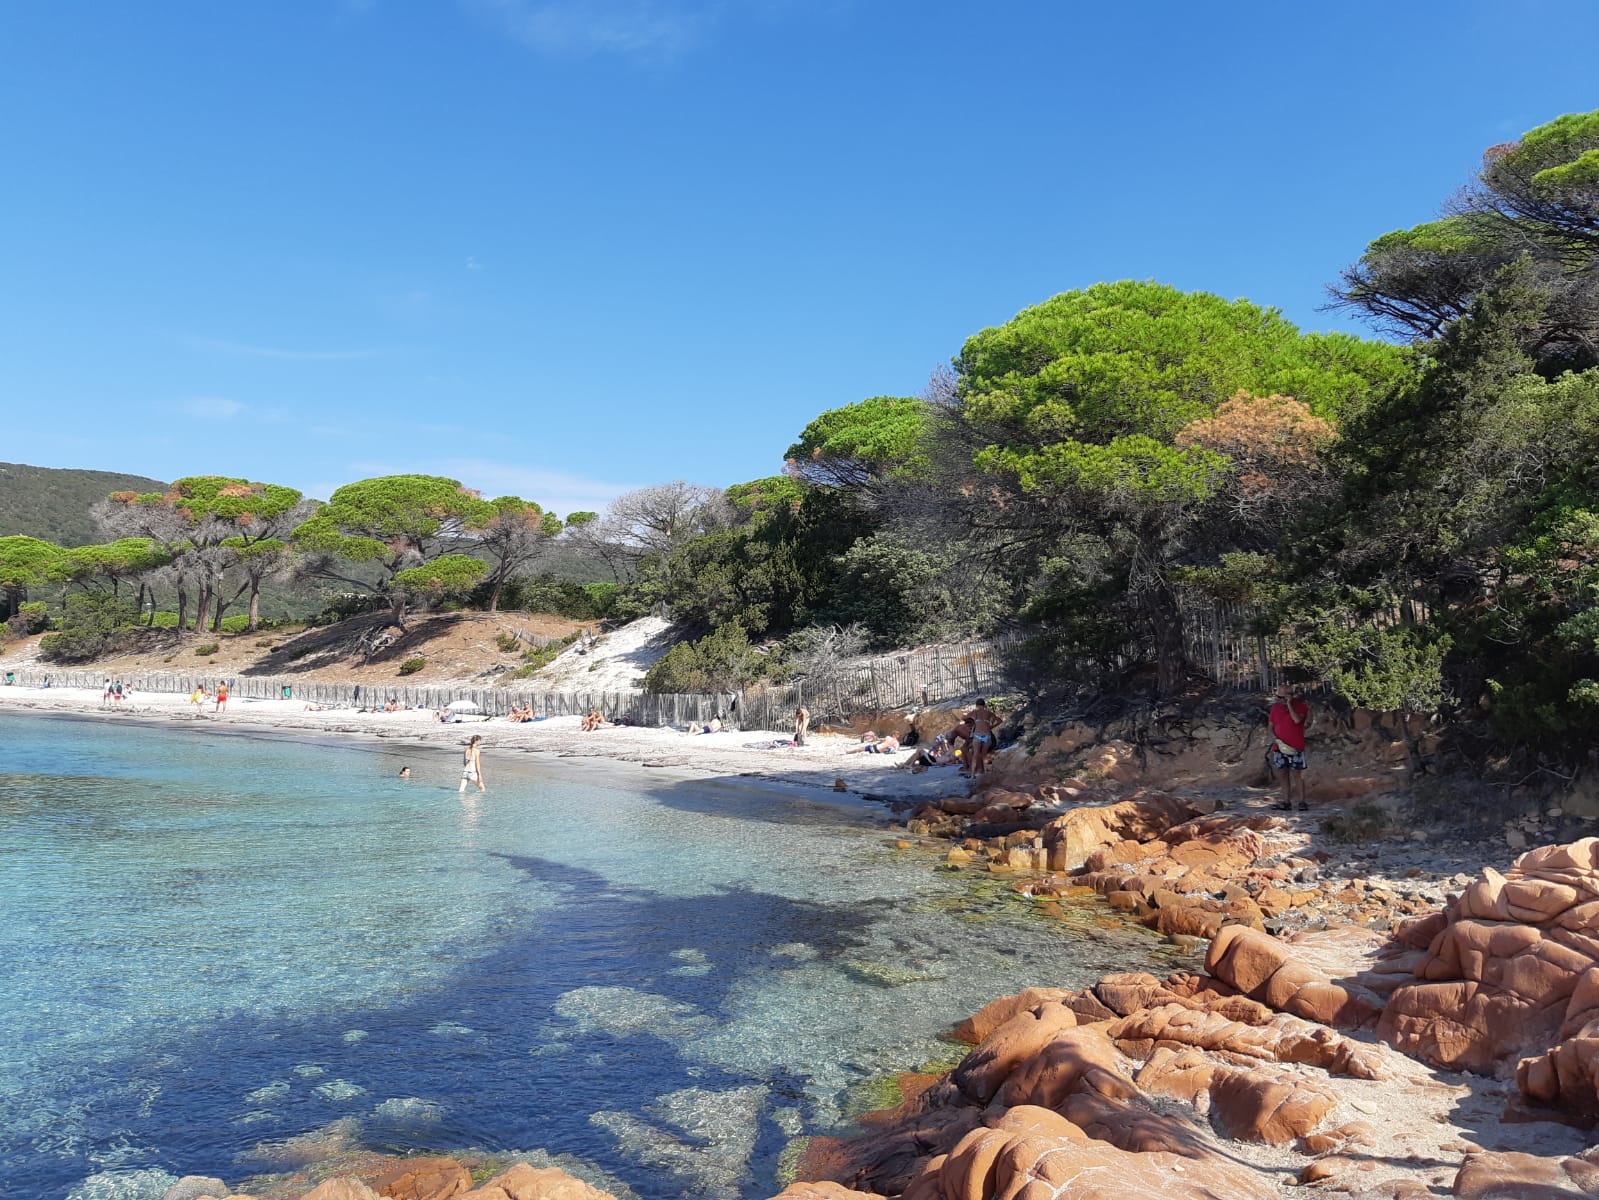 Petite plage non loin de Porto-Vechio, qui présente la tranquillité et la beauté des plages de Corse du Sud